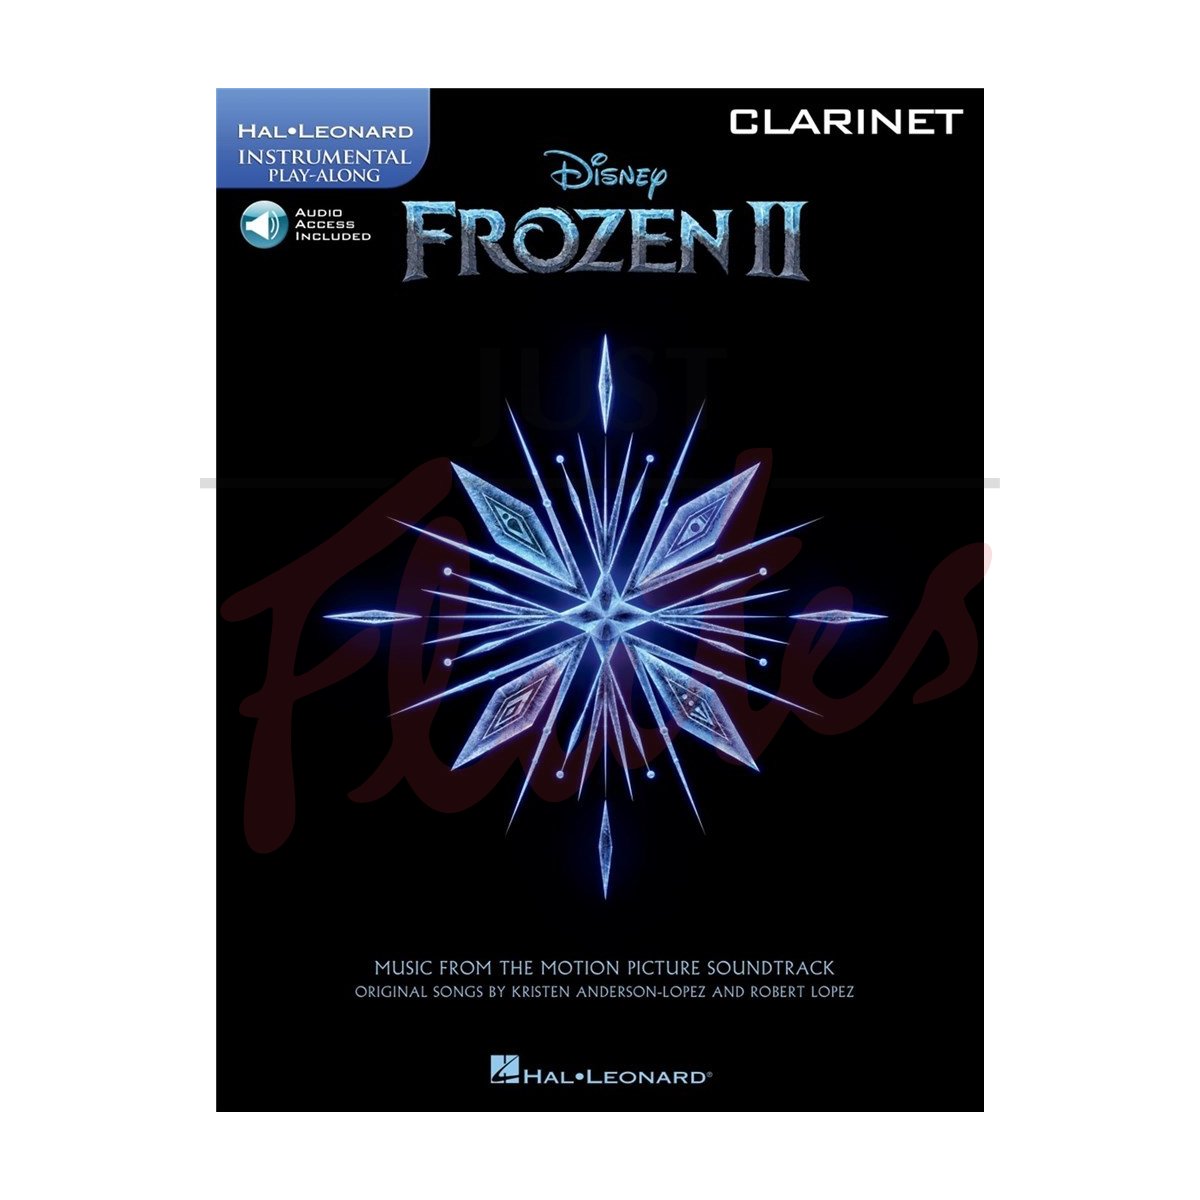 Frozen II for Clarinet